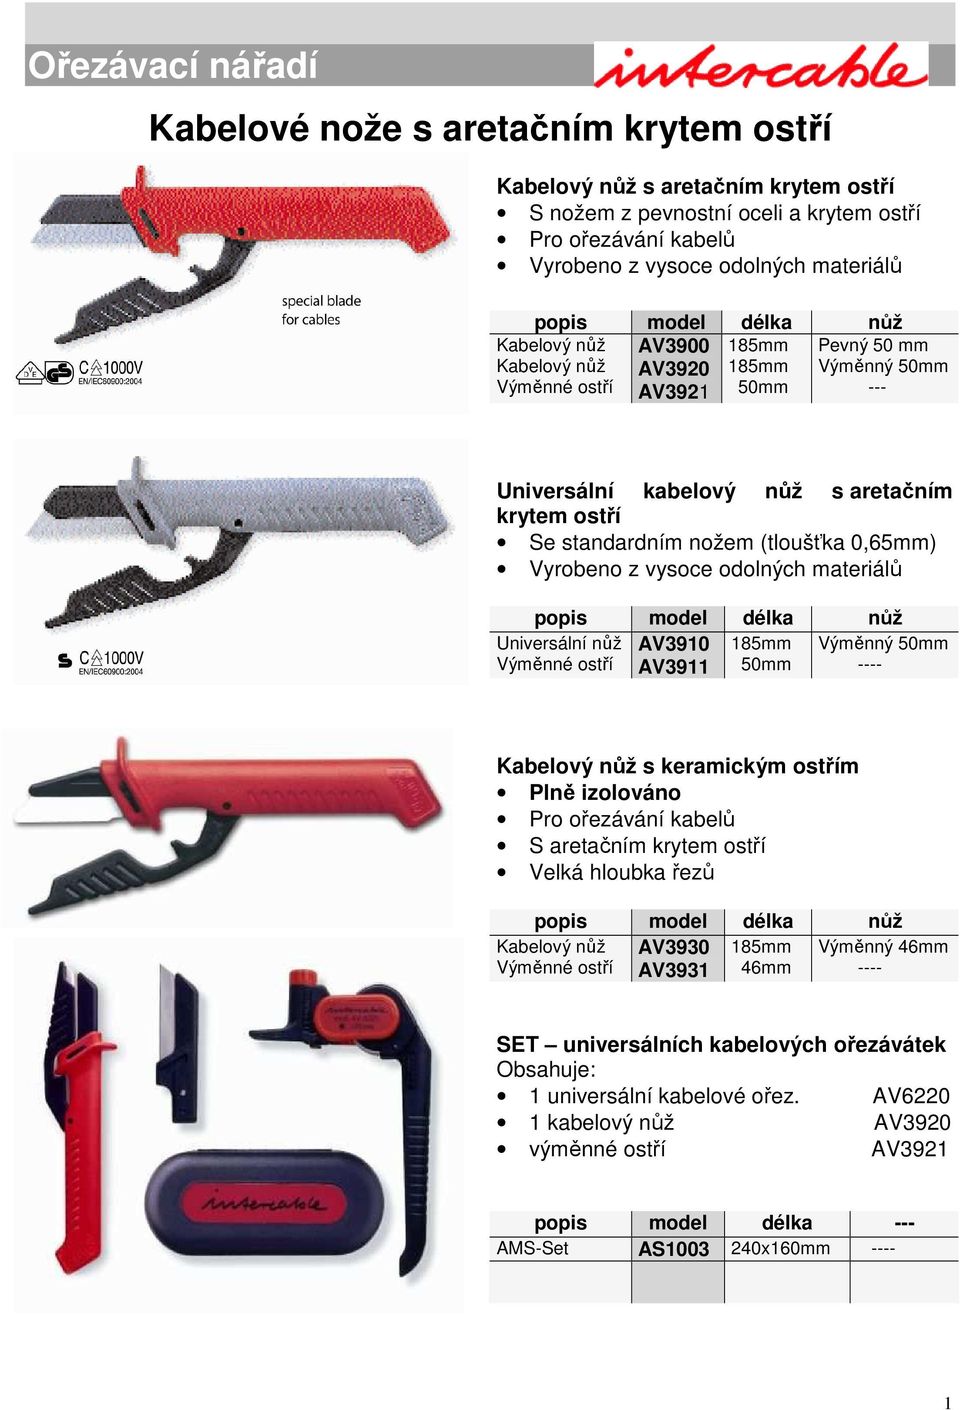 Ořezávací nářadí Kabelové nože s aretačním krytem ostří - PDF Free Download